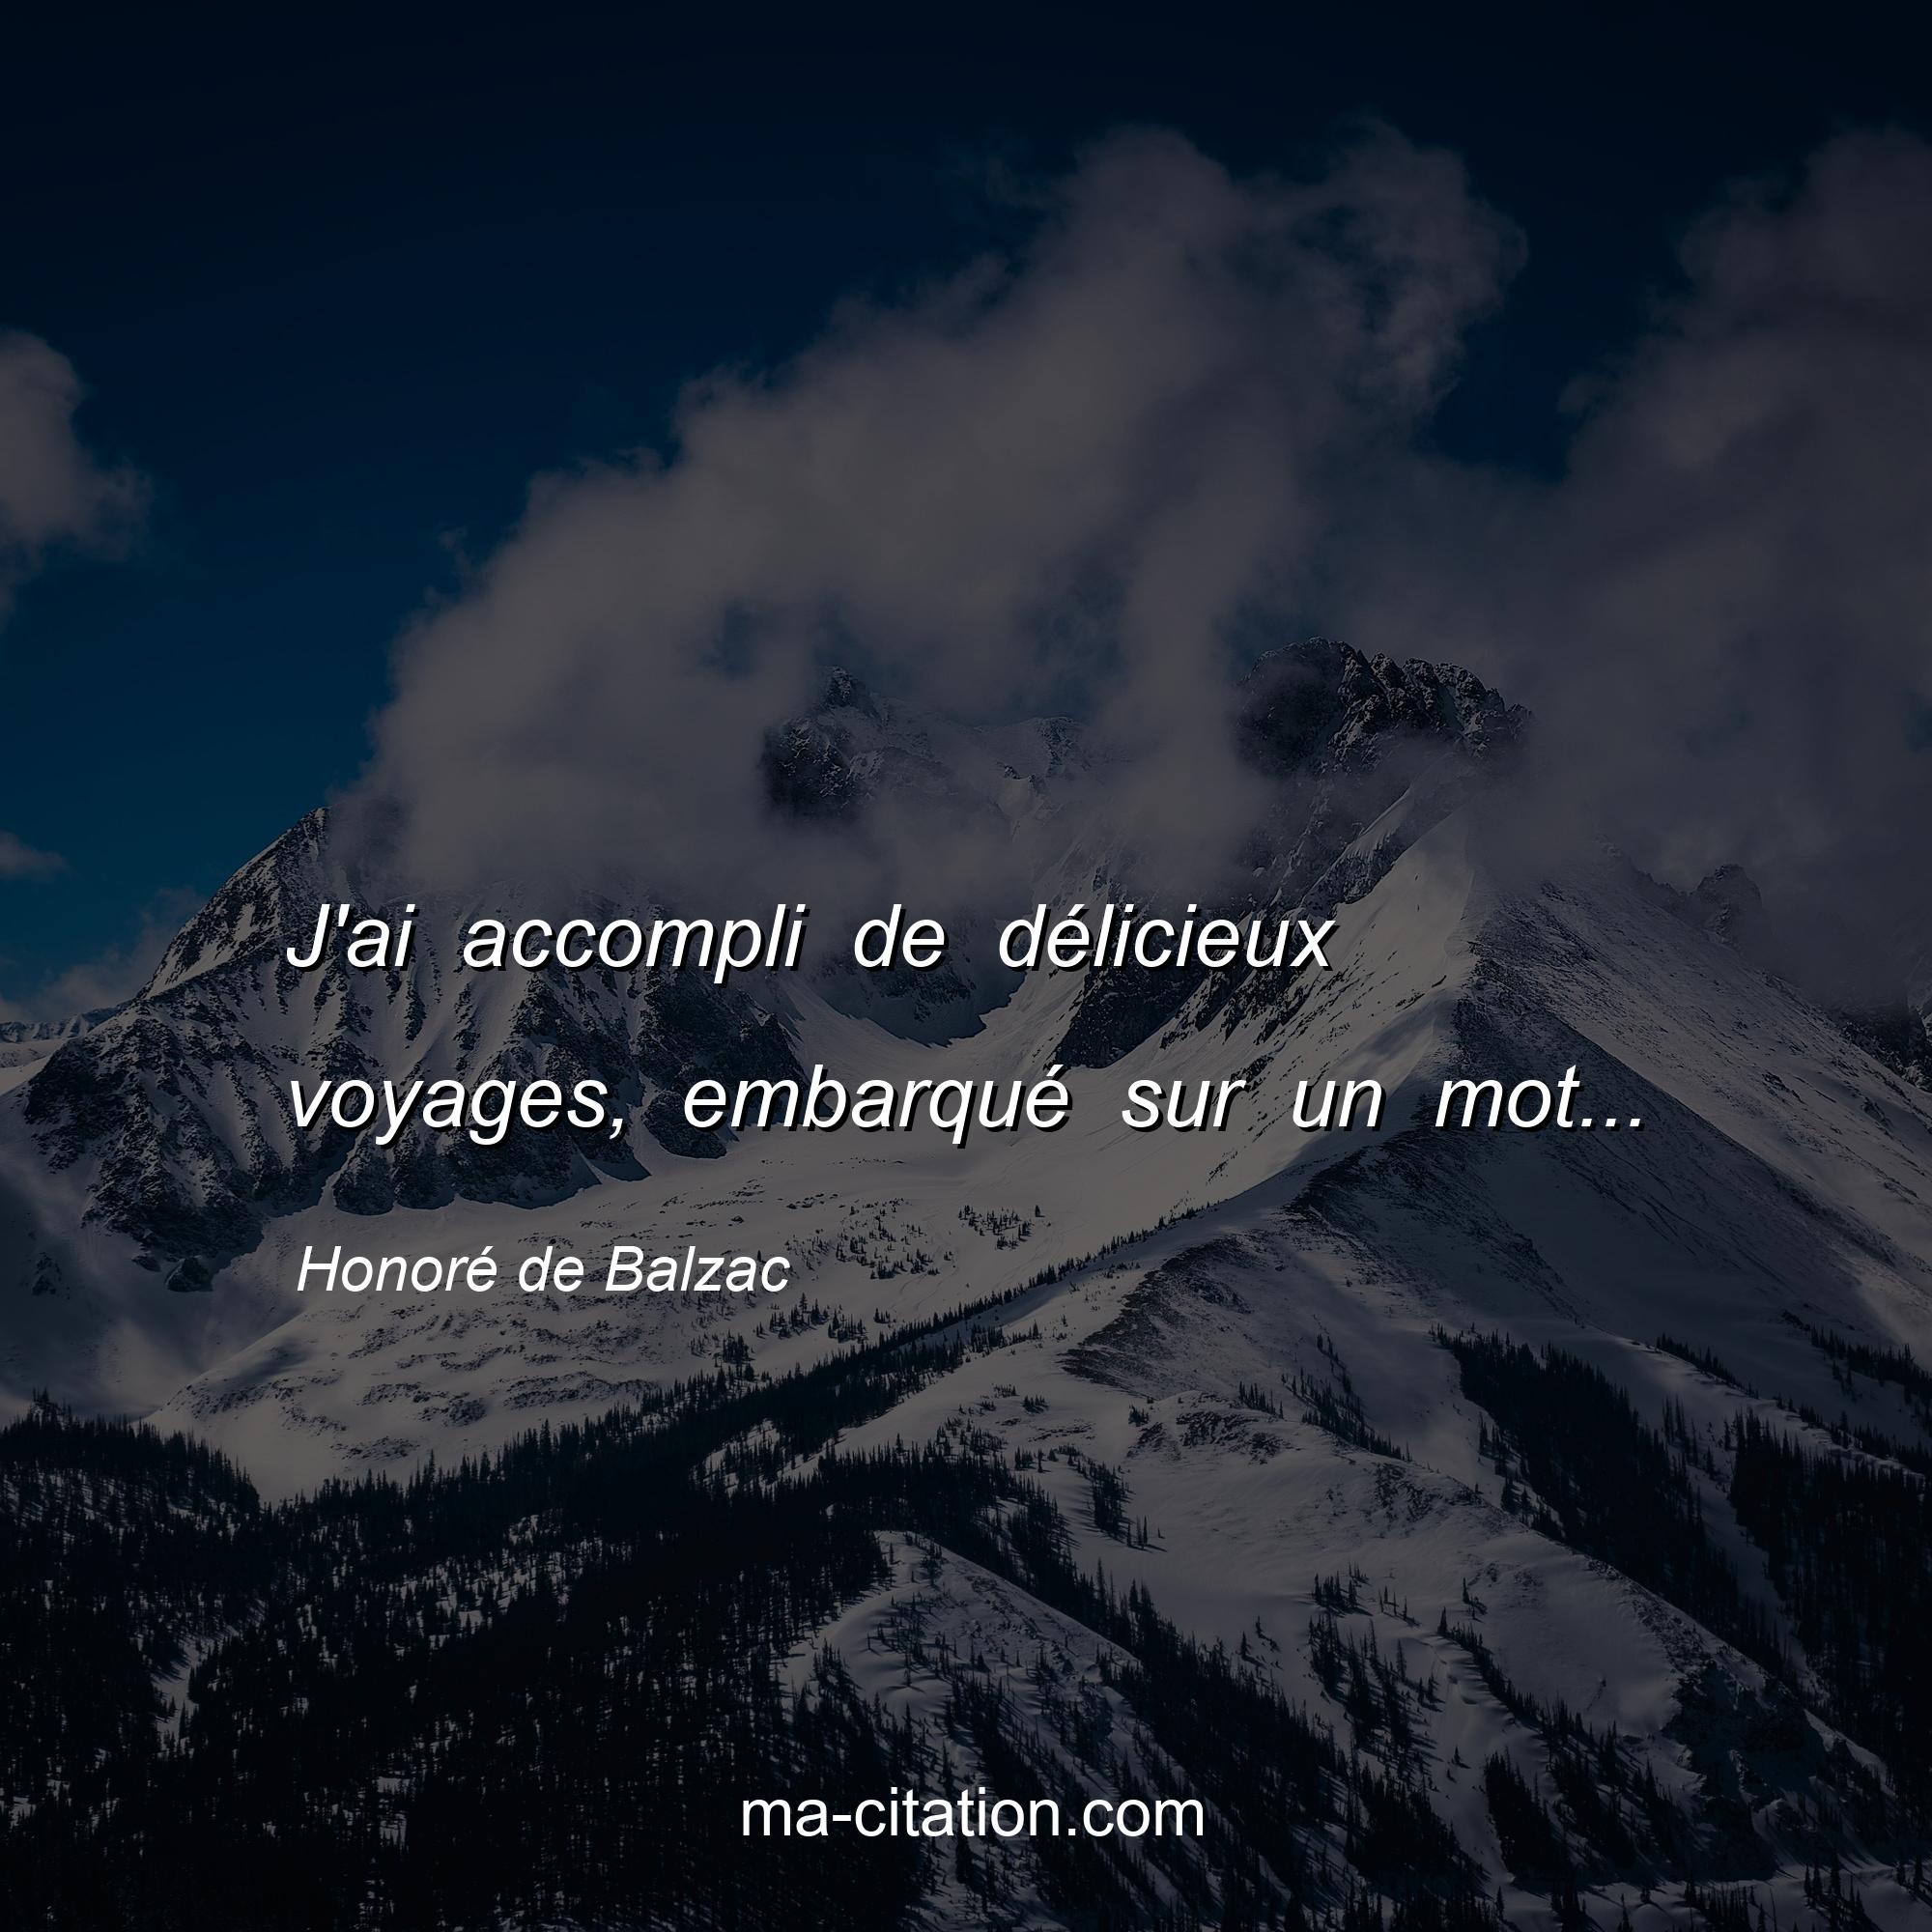 Honoré de Balzac : J'ai accompli de délicieux voyages, embarqué sur un mot...